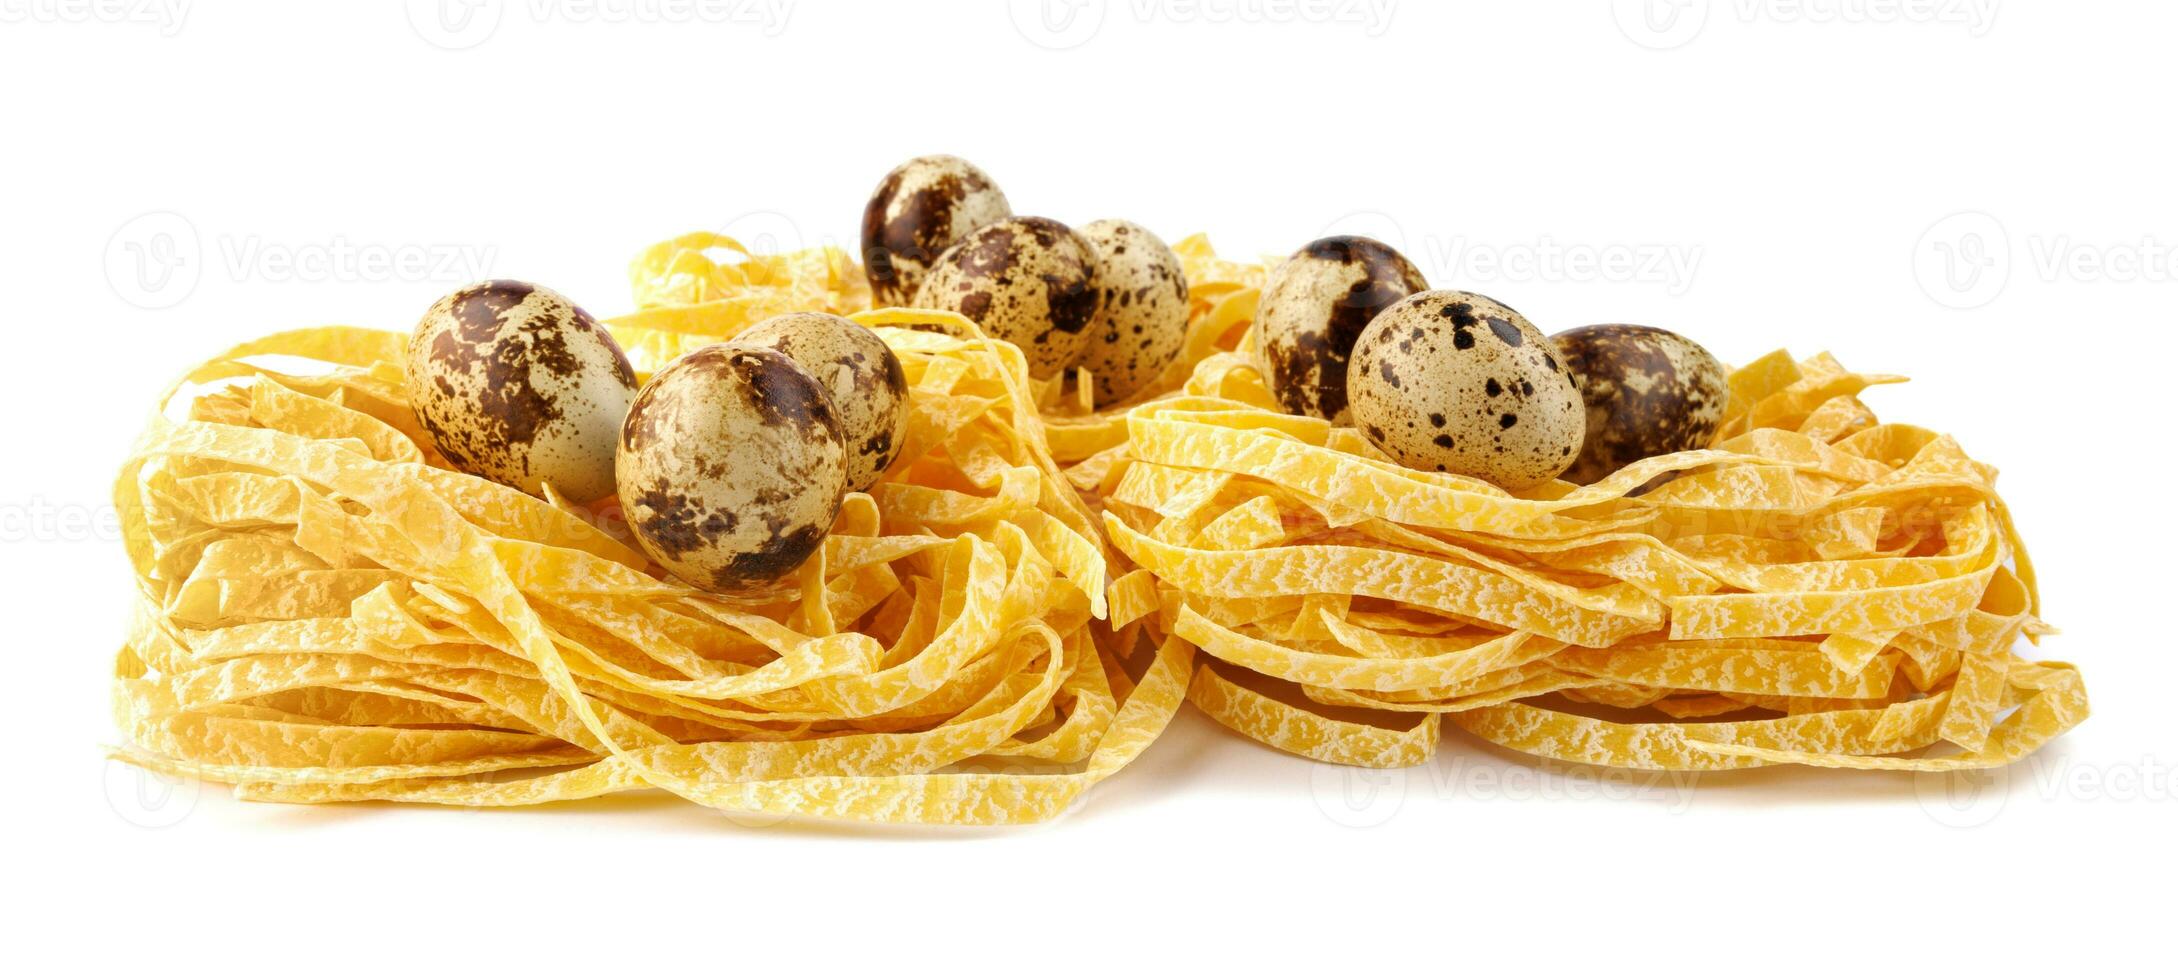 bon av italiensk pasta med vaktel ägg inuti isolerat på vit bakgrund. foto